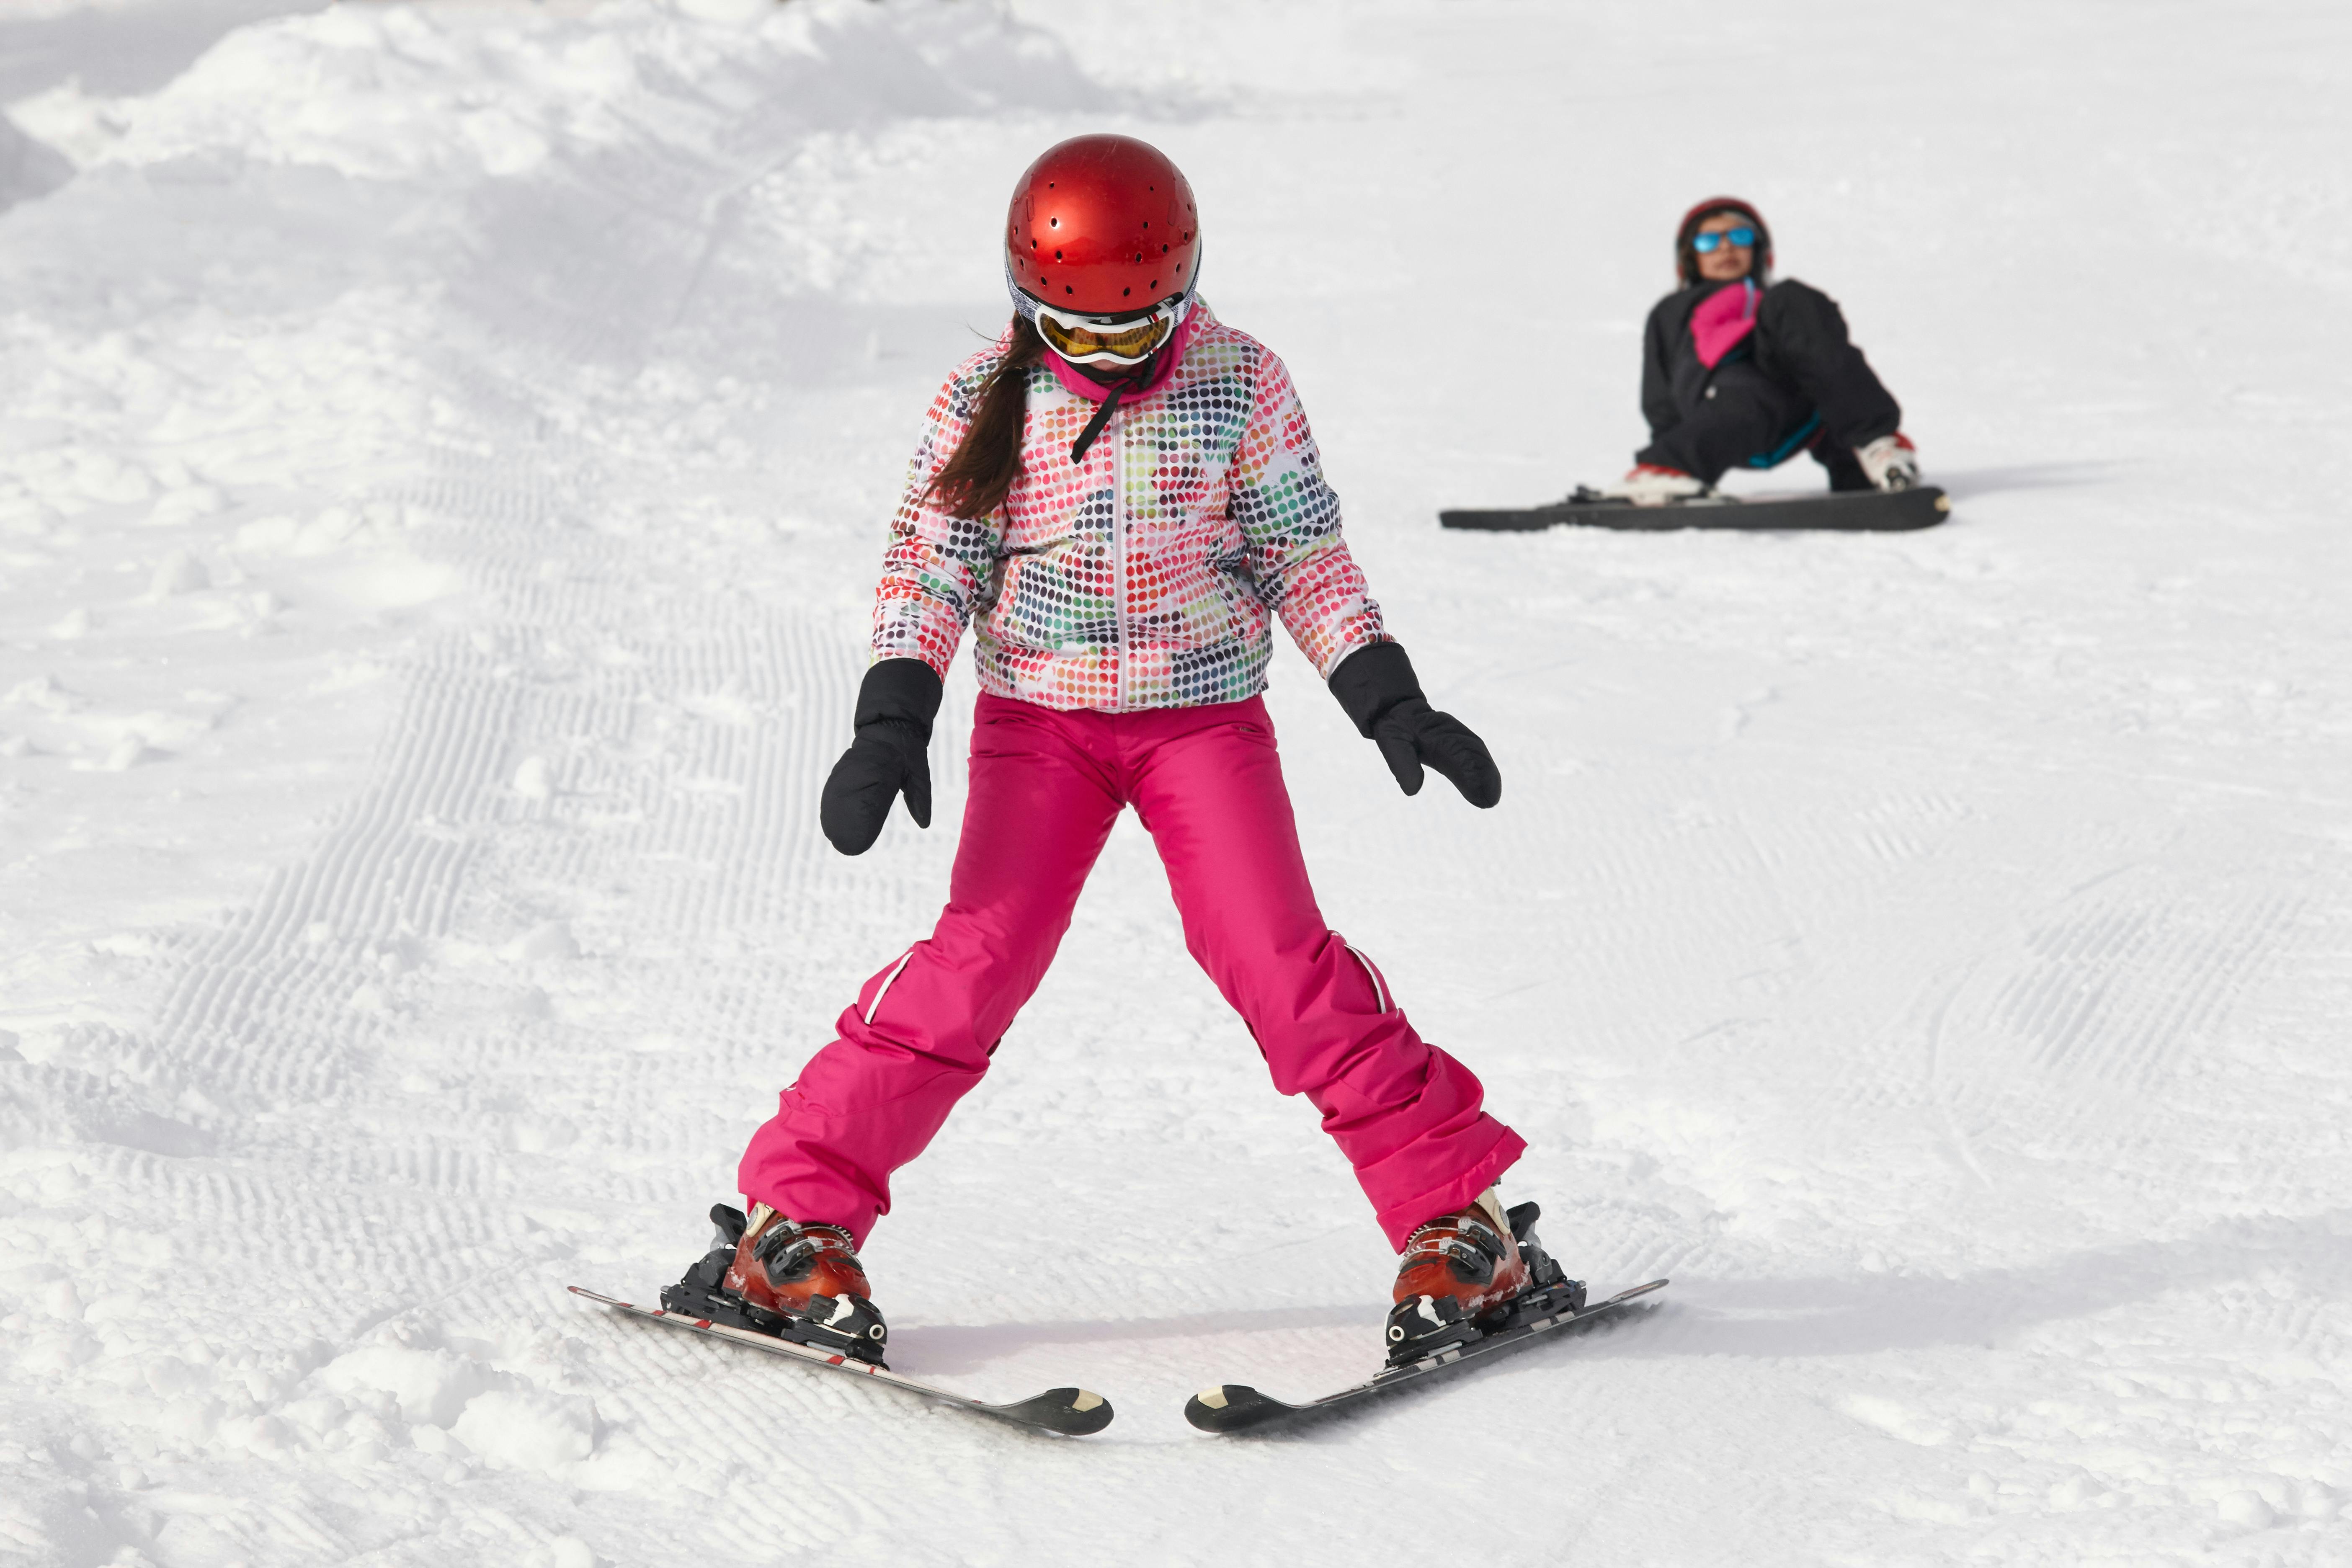 Head Rachel Helmet – Skier's Sportshop